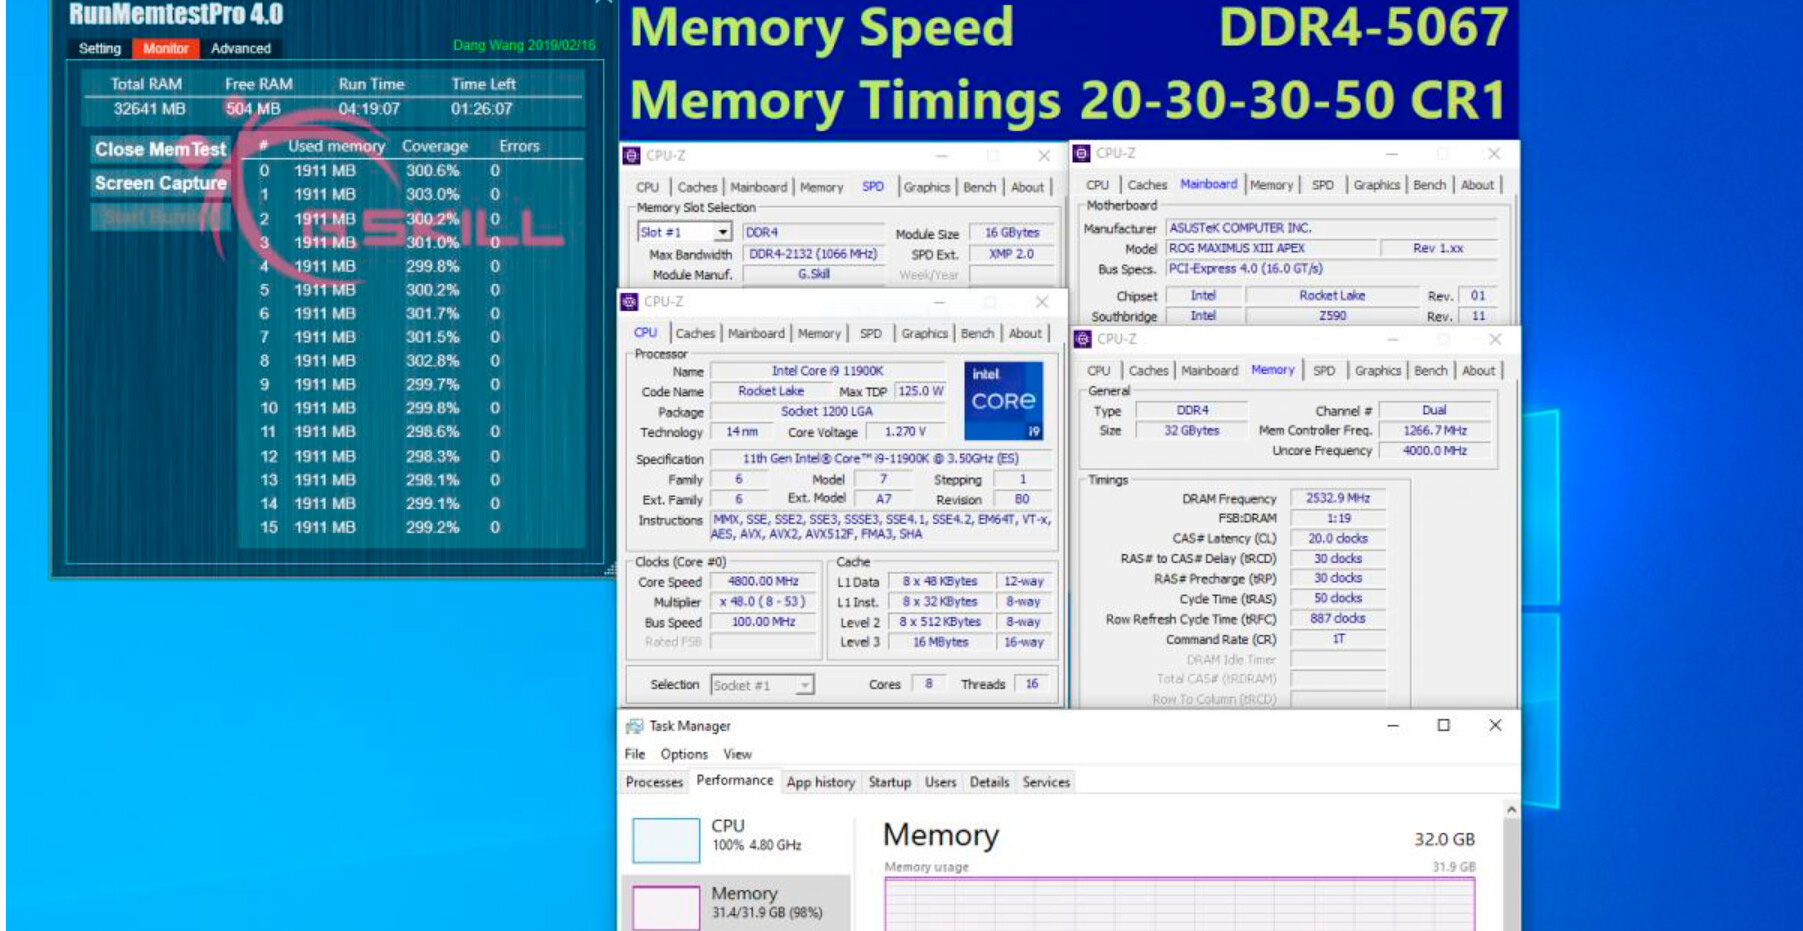 Для процессоров Rocket Lake-S и платформы Z590 G.Skill предлагает сверхскоростные комплекты DDR4-5333